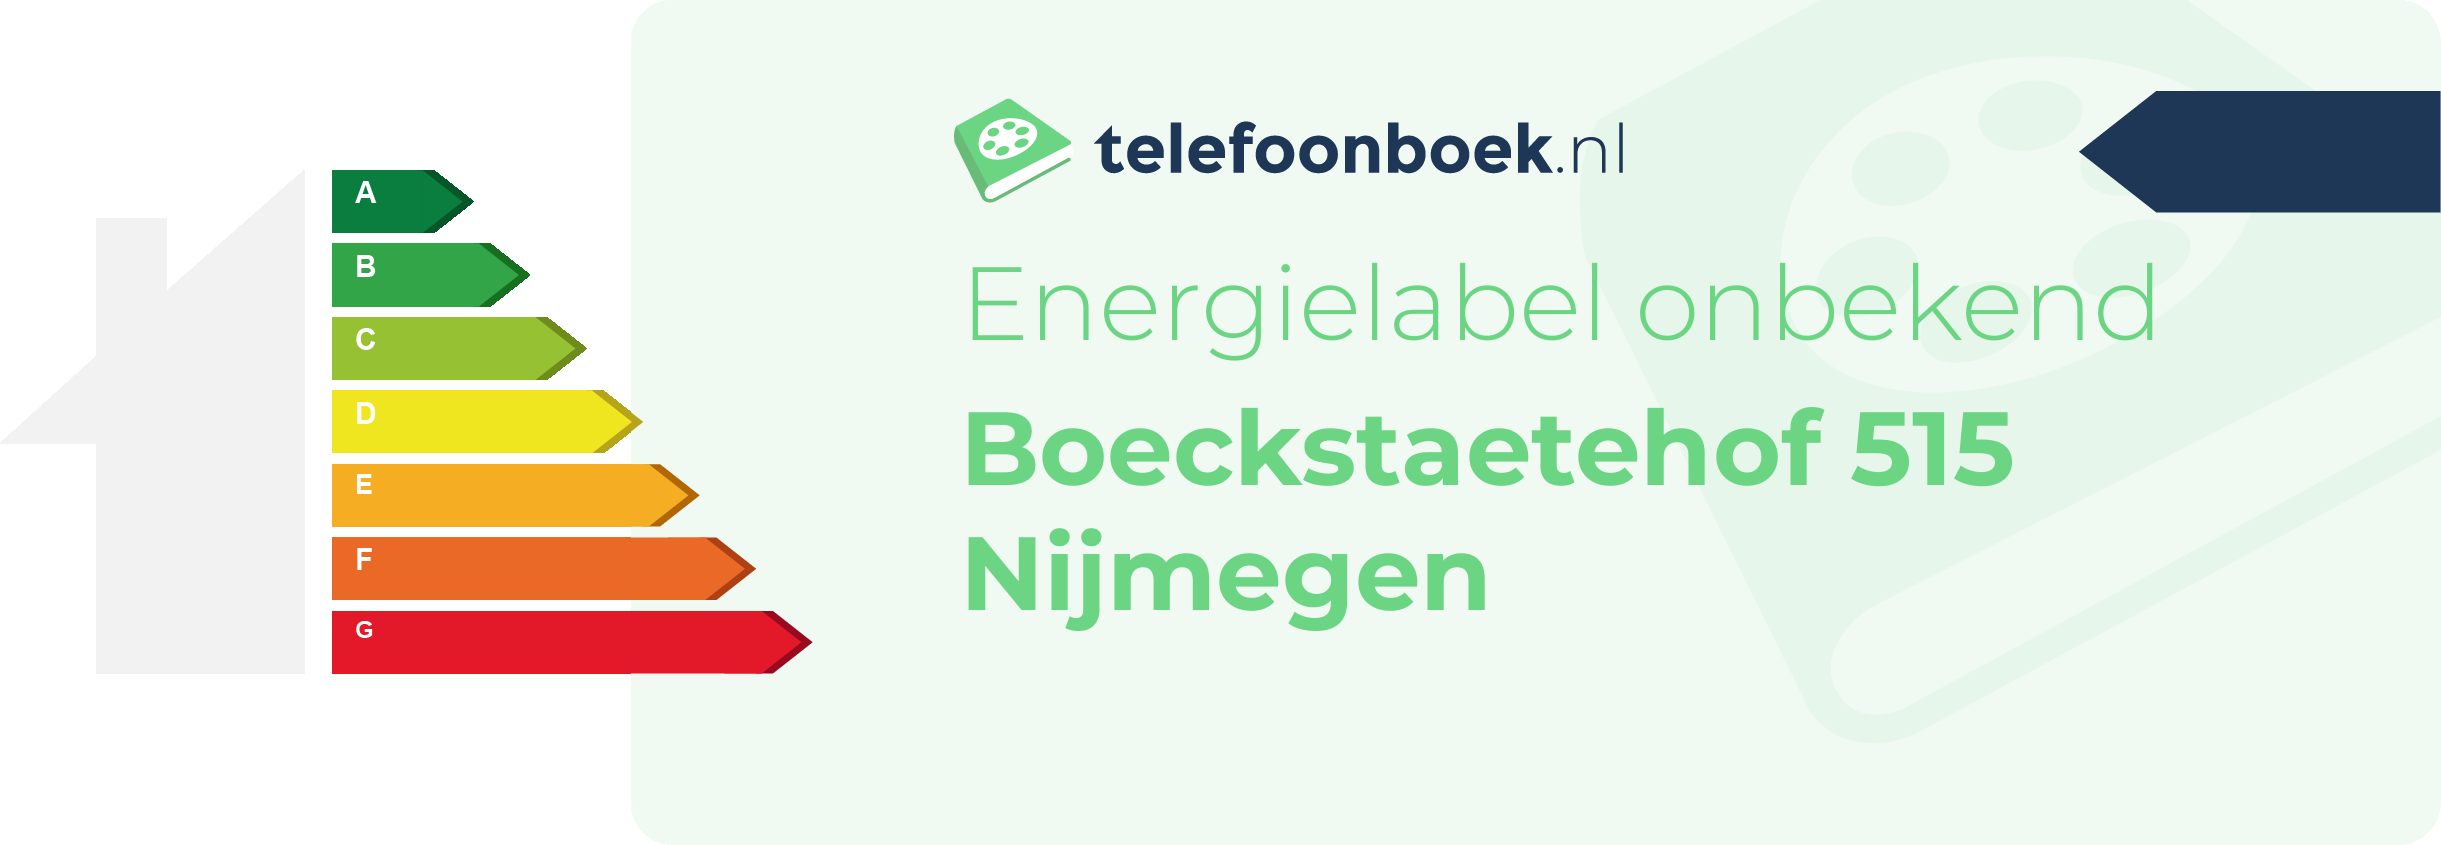 Energielabel Boeckstaetehof 515 Nijmegen